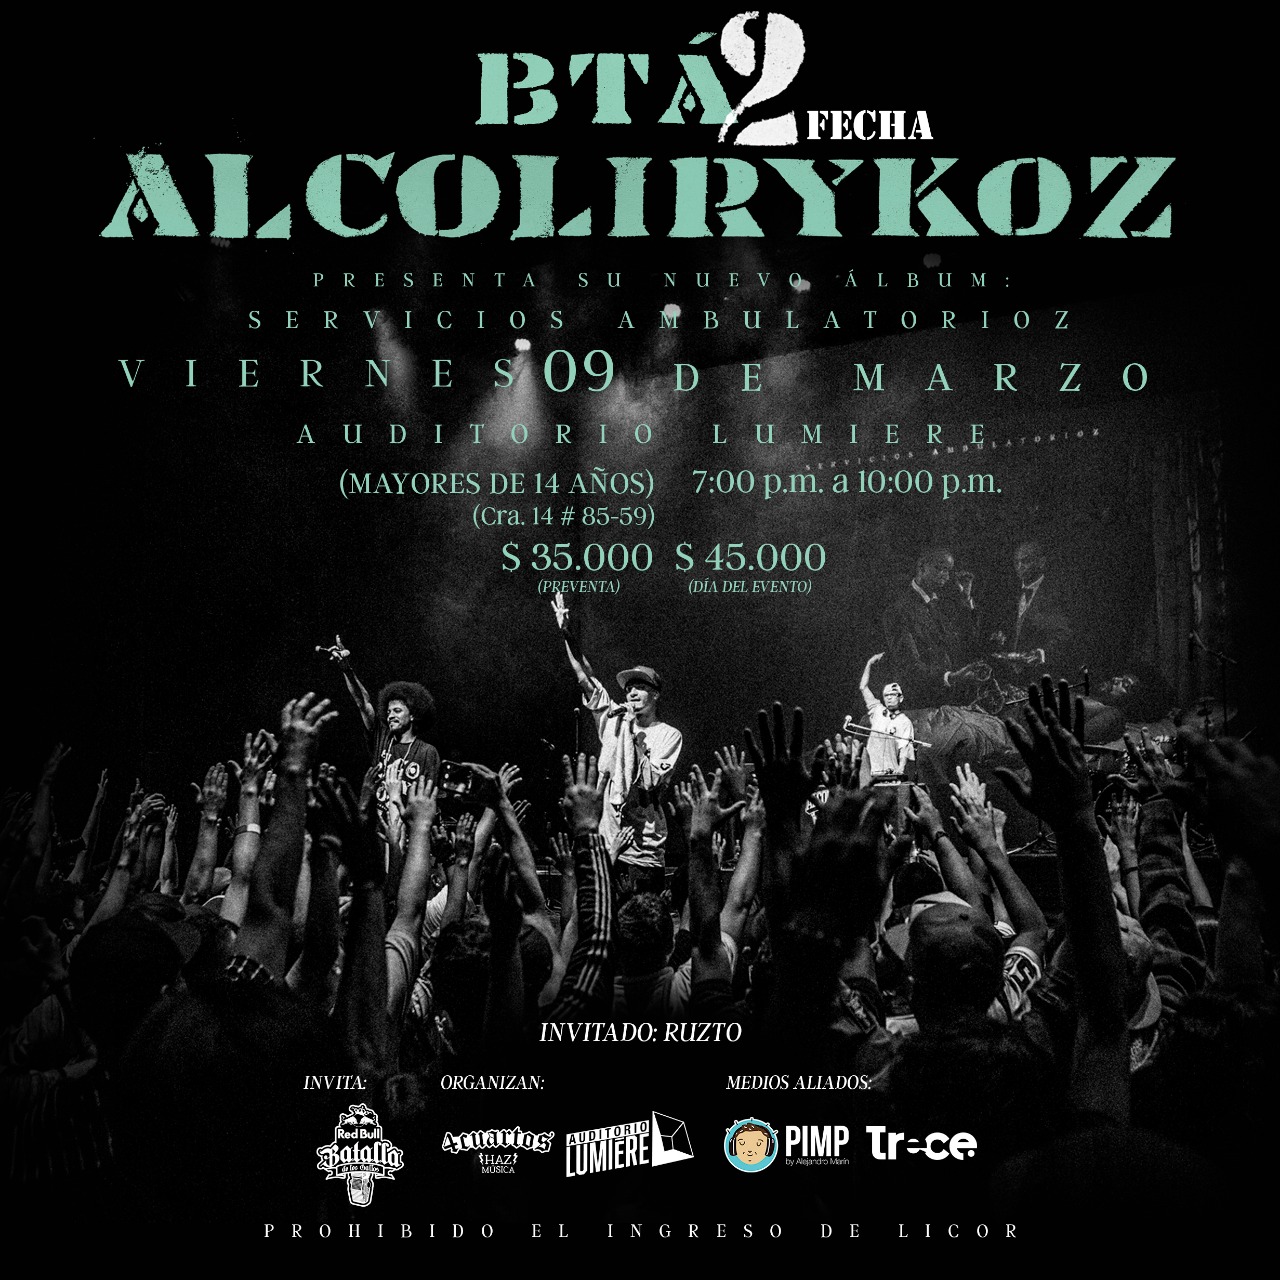 AlcolirykoZ anuncia una segunda fecha en Bogotá.